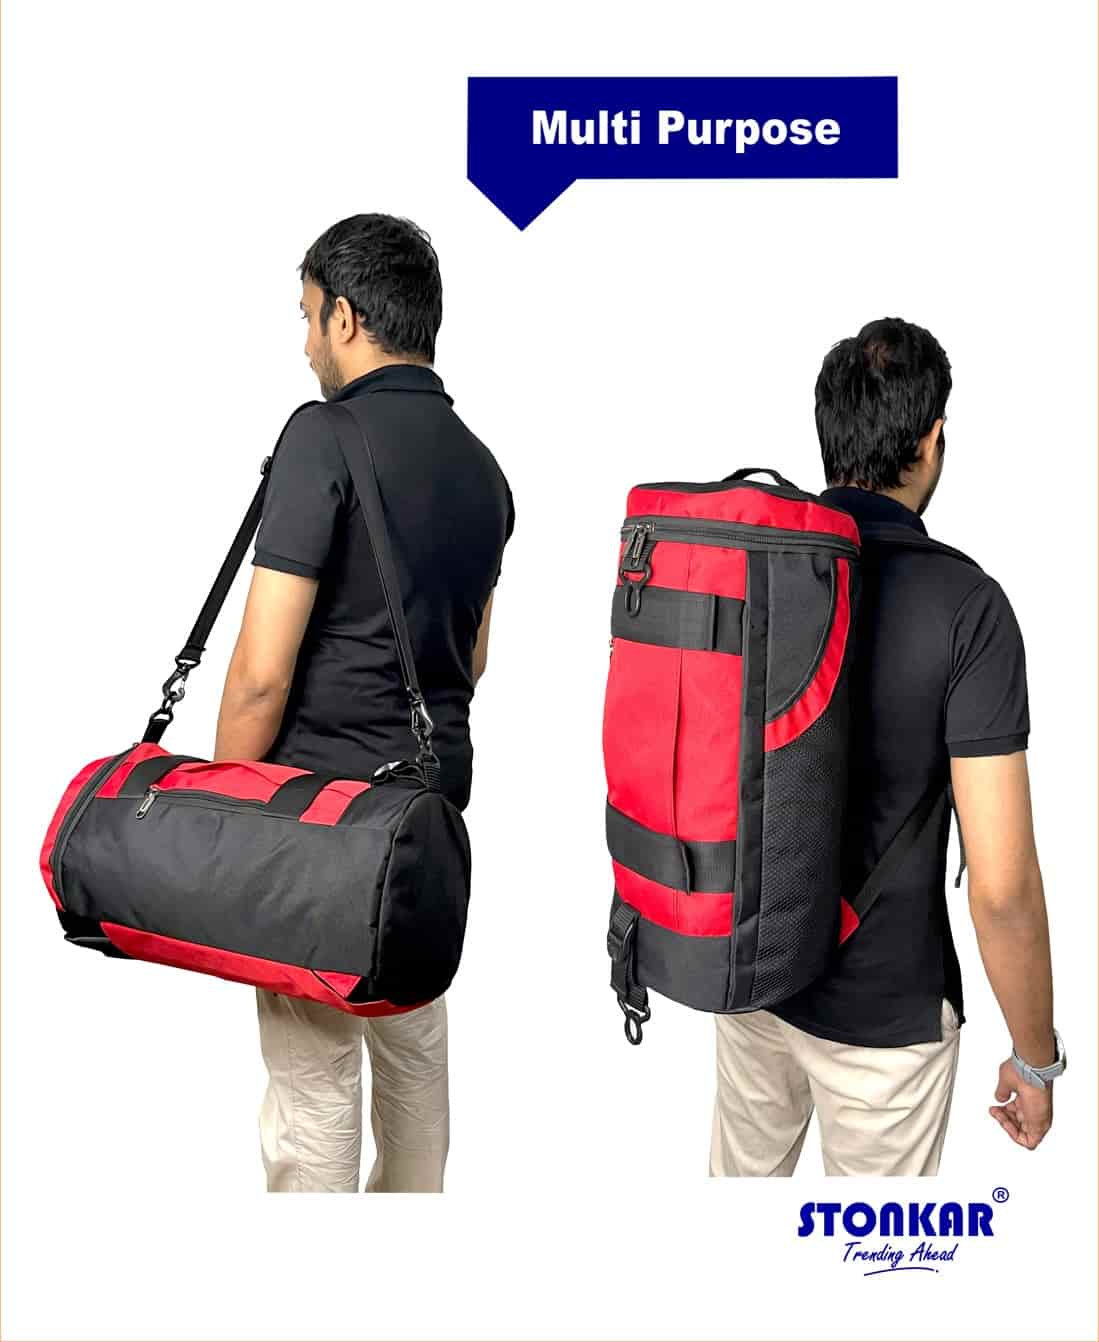 Multi Purpose Duffle Bag